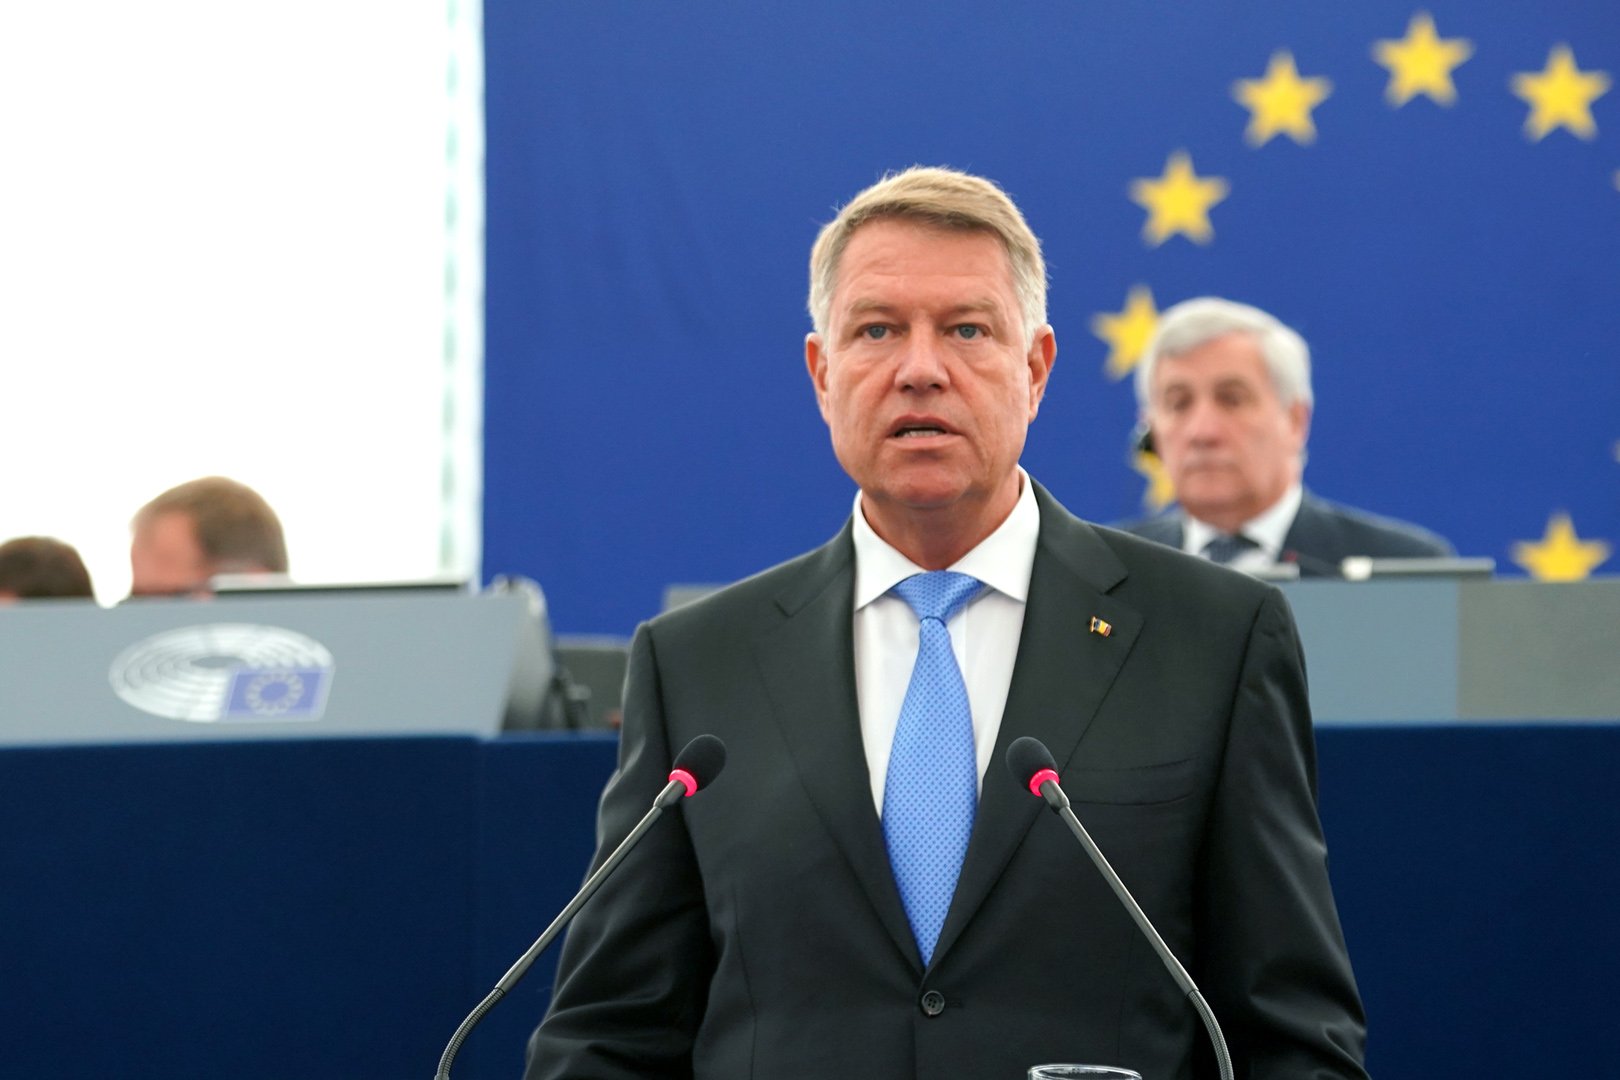  Mureşan: Iohannis va primi cea mai prestigioasă distincţie internaţională pe care a primit-o vreodată un om politic român